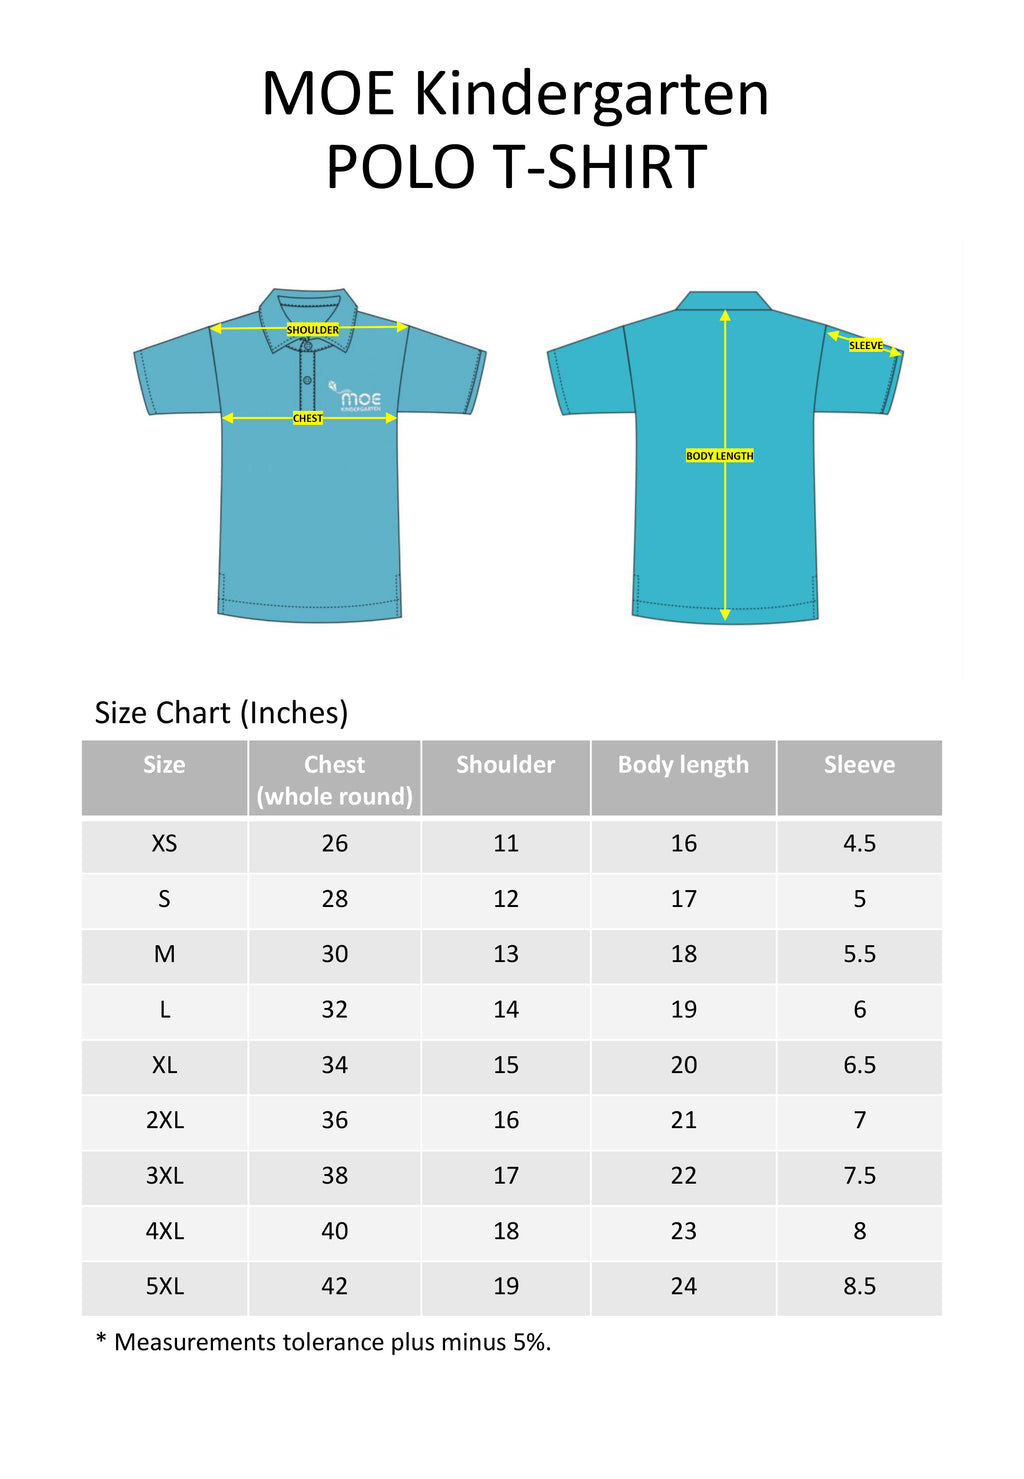 MOE Kindergarten Polo T-Shirt Unisex